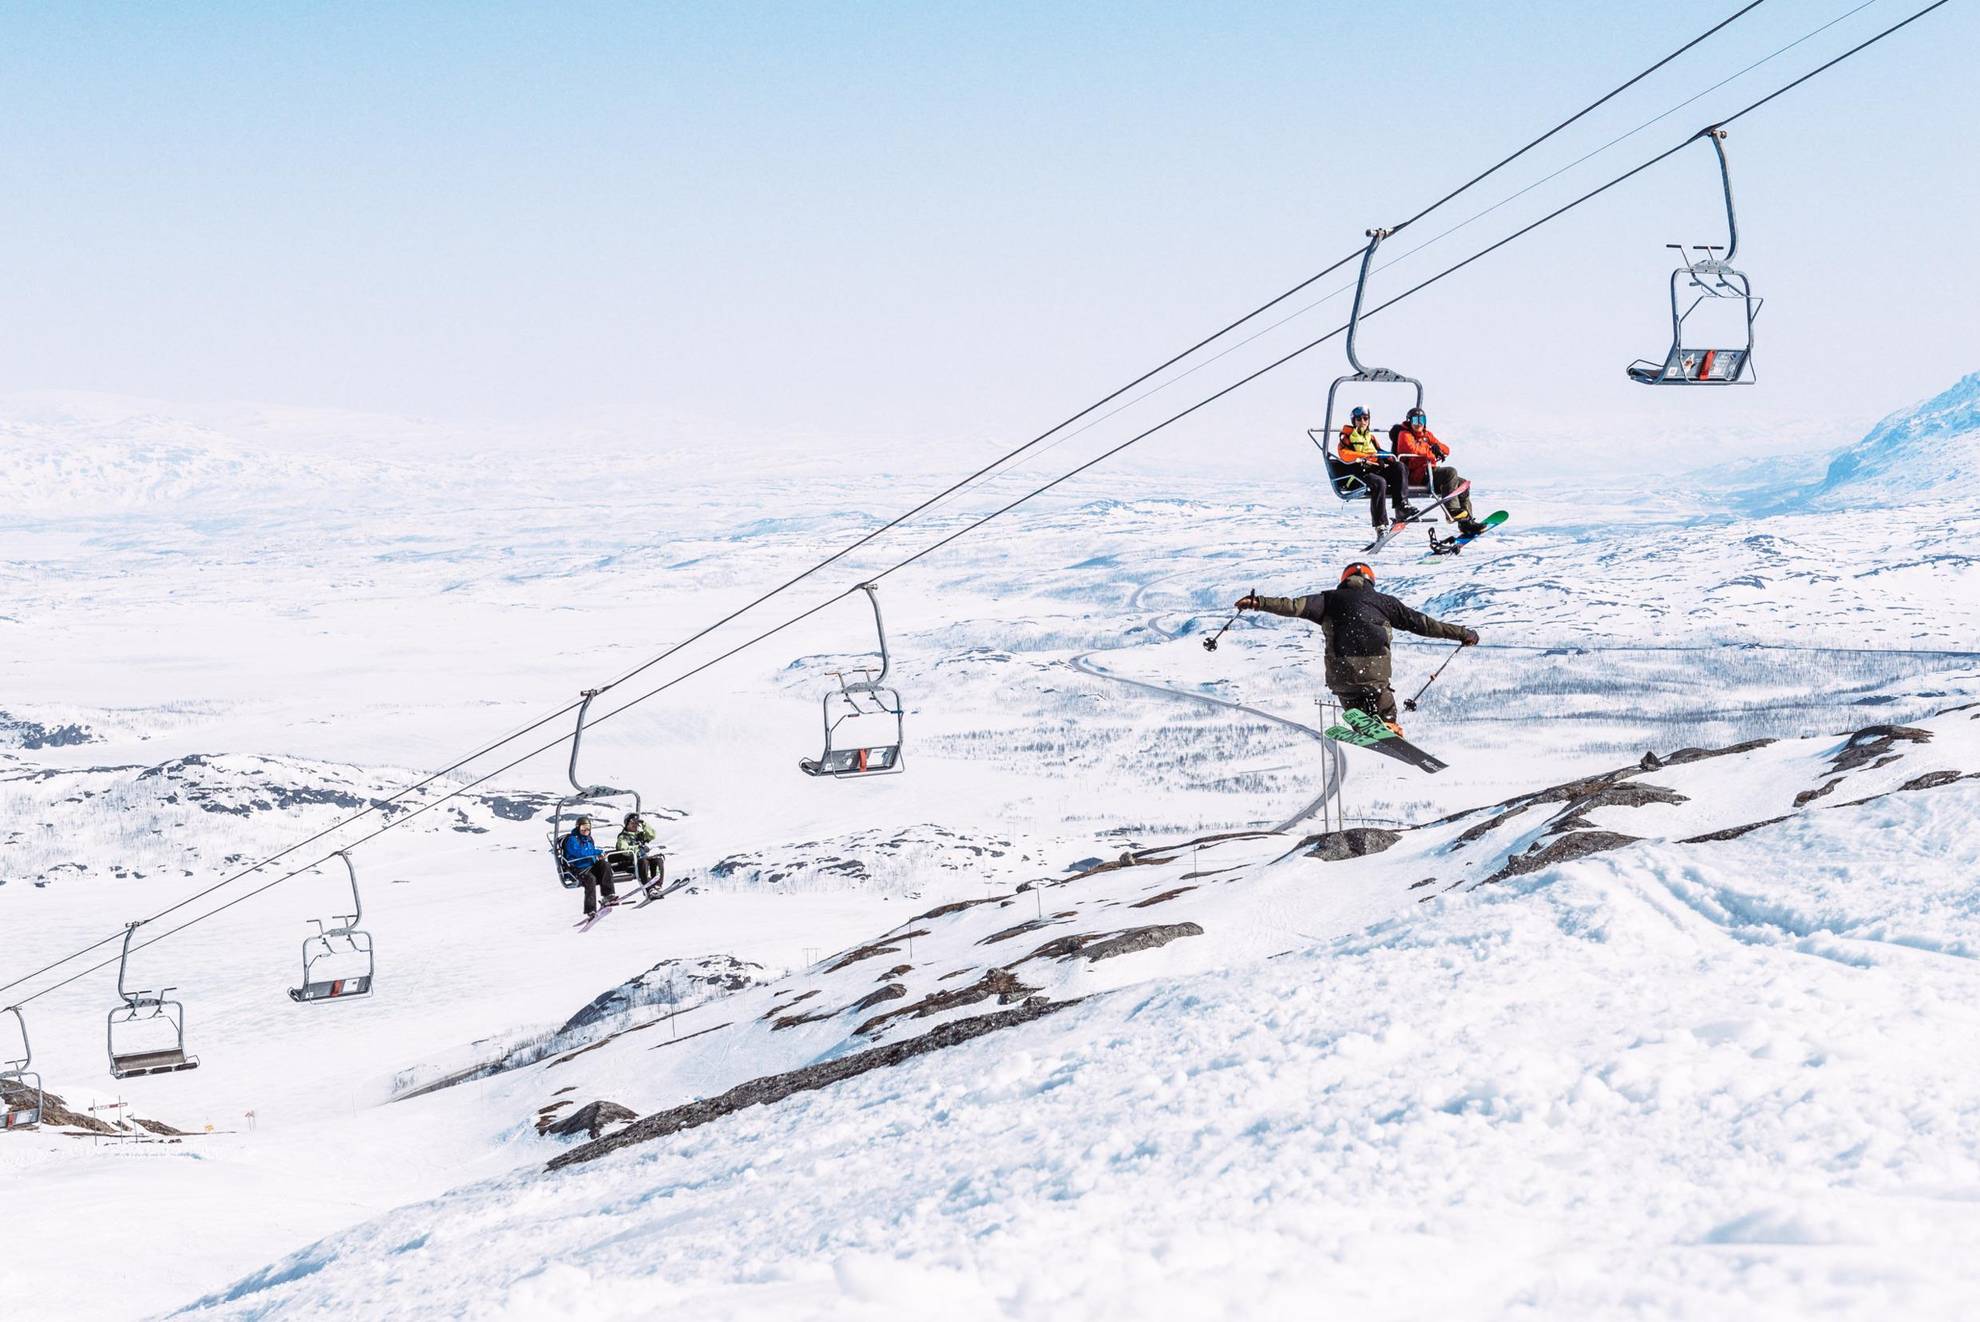 Des gens assis sur un remonte-pente regardant une personne sautant avec des skis.